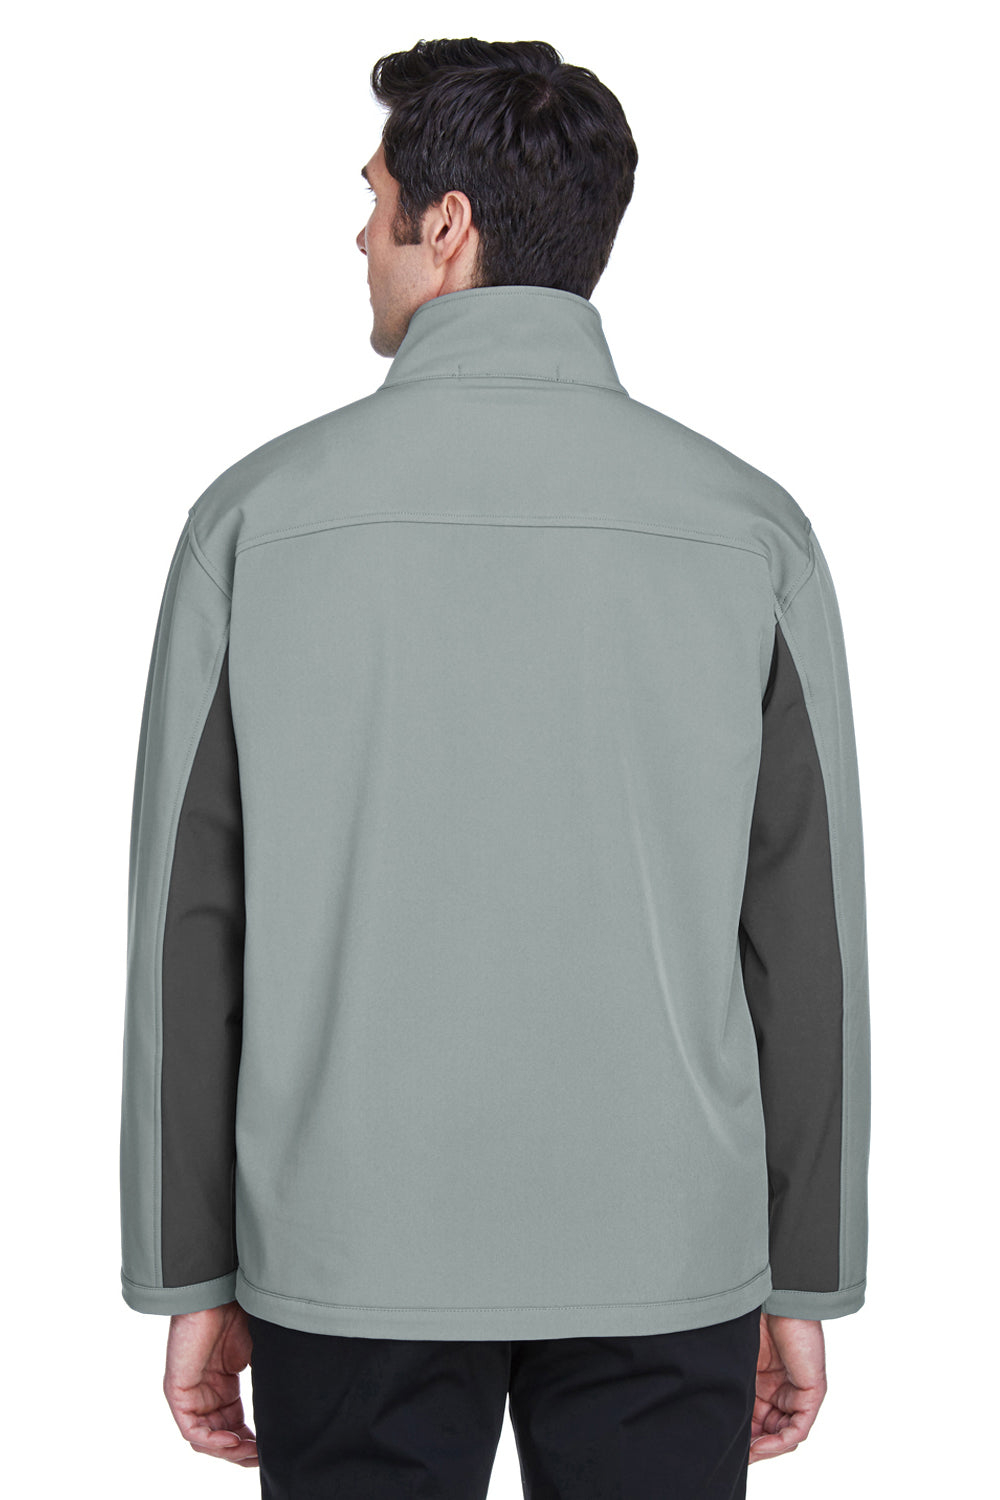 Devon & Jones D997 Mens Wind & Water Resistant Full Zip Jacket Charcoal Grey/Dark Grey Back